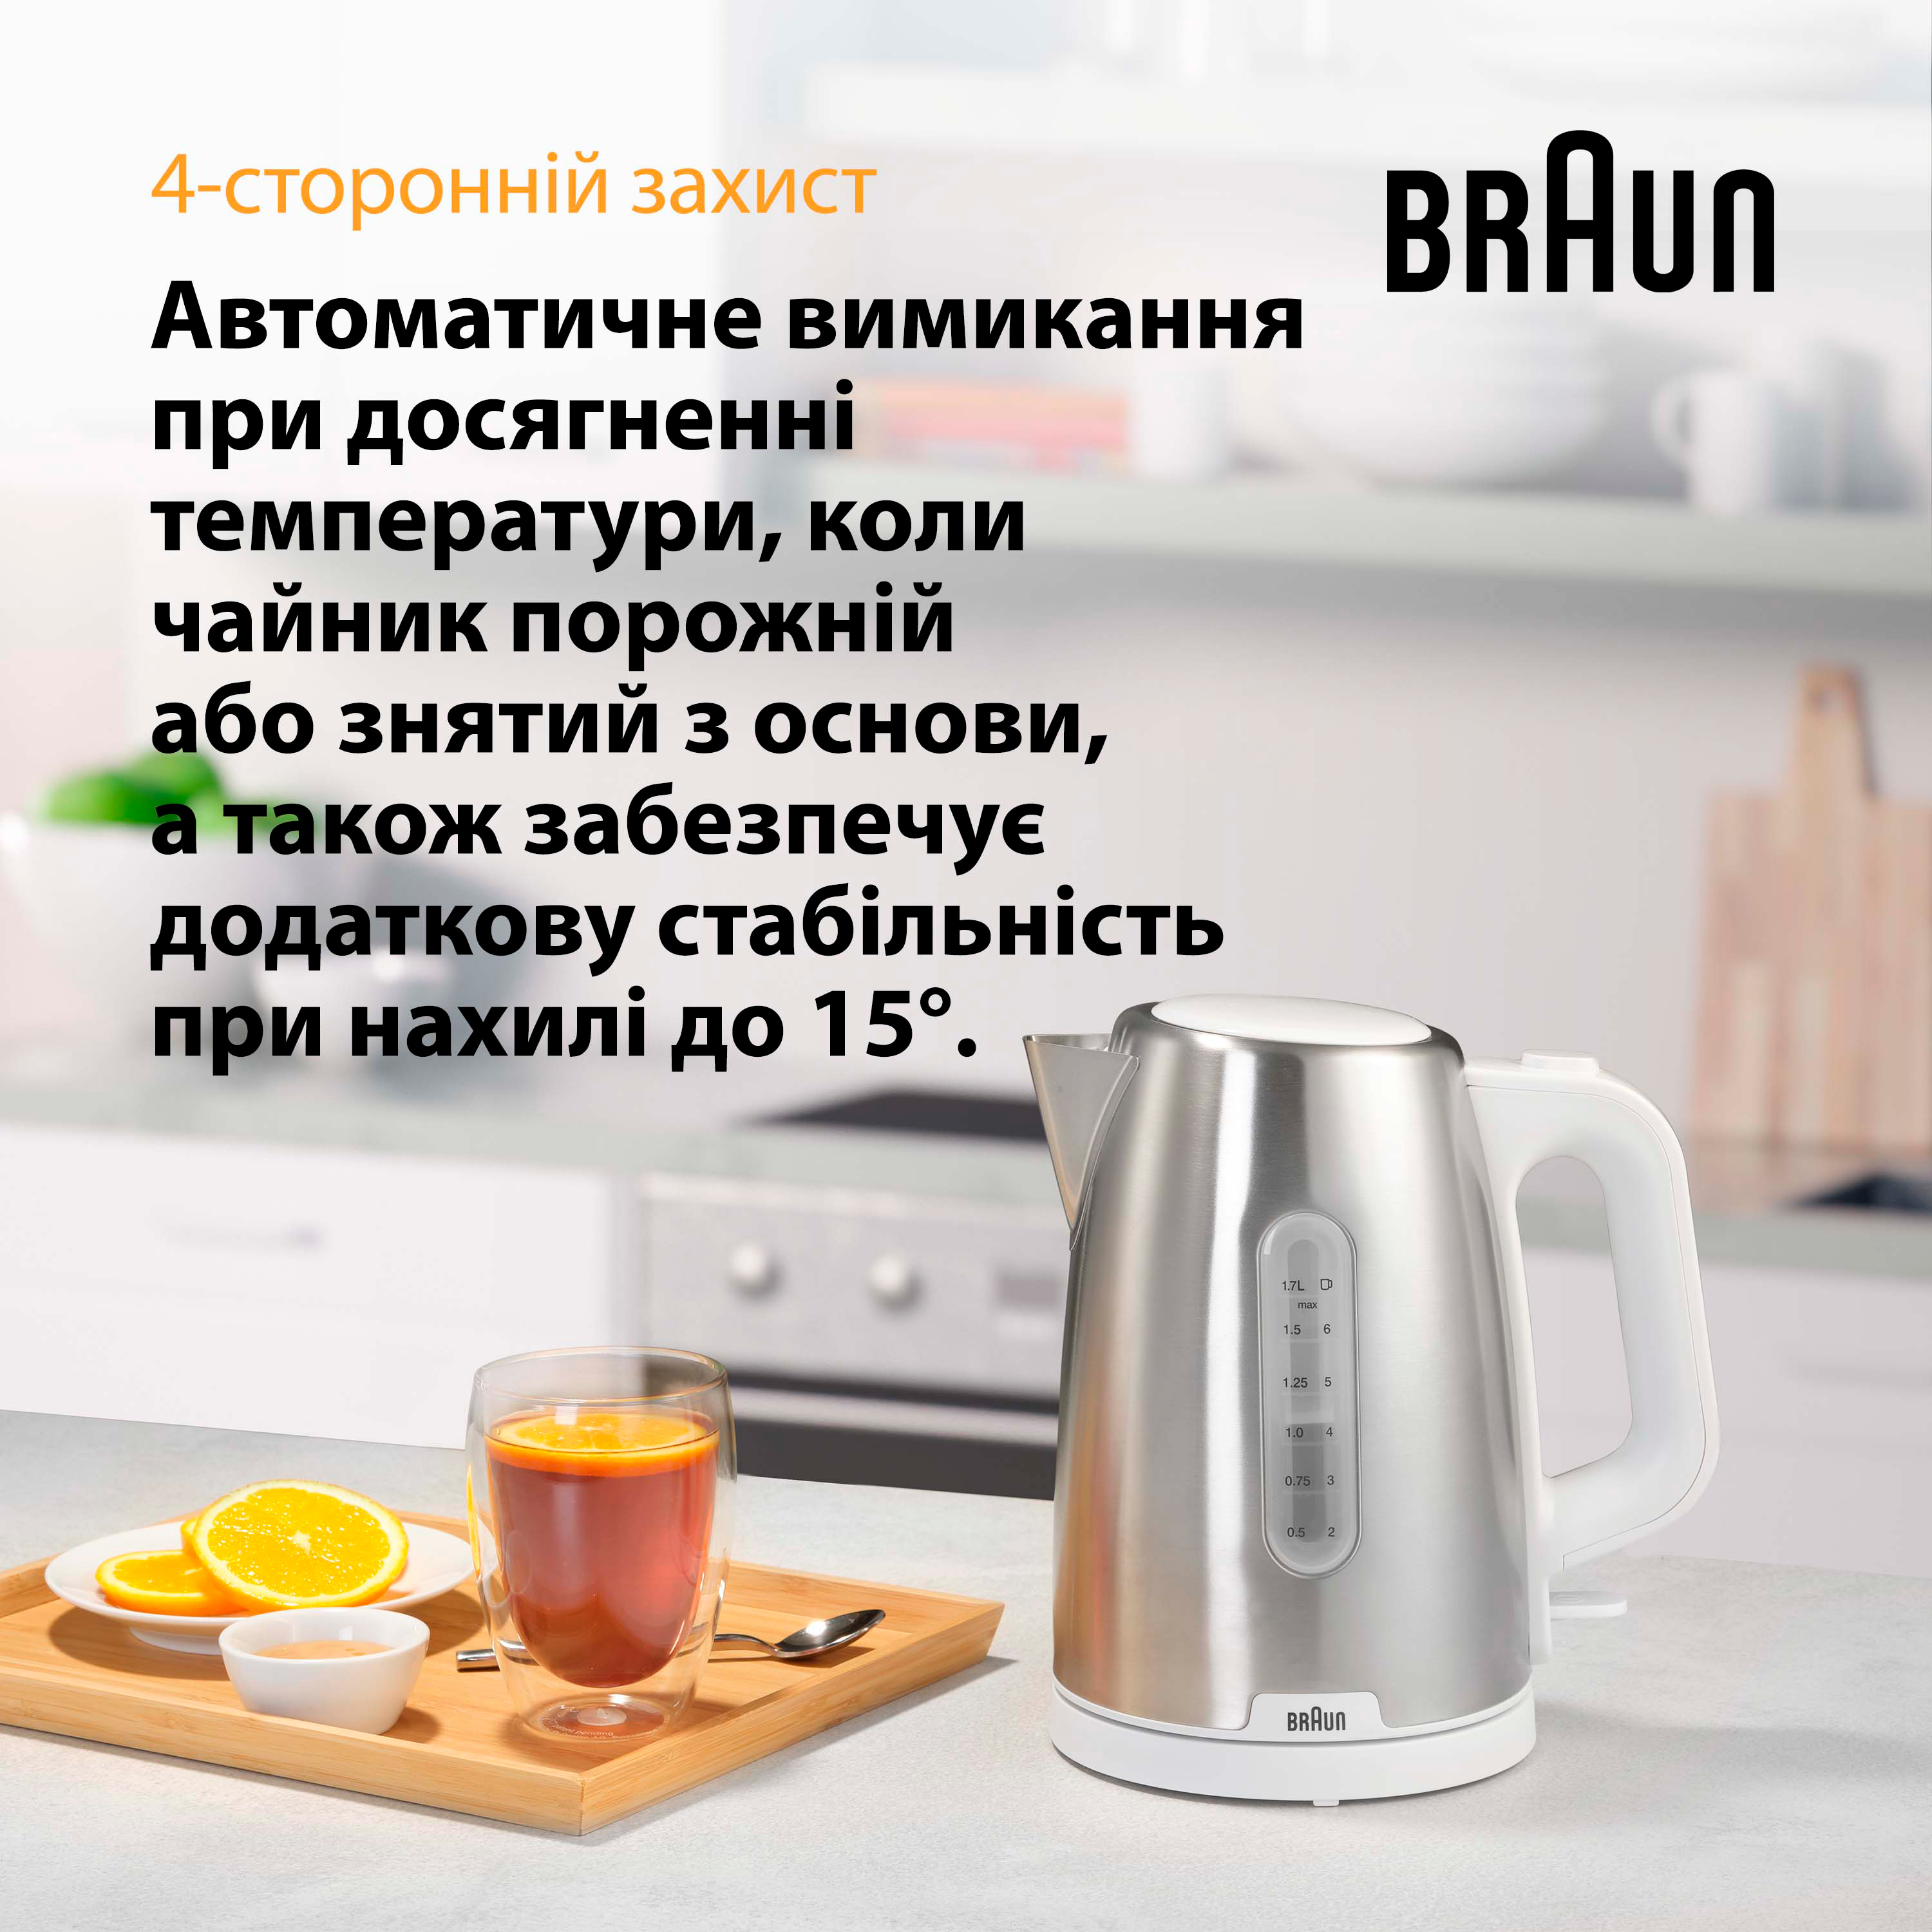 продаємо Braun WK 1500 WH в Україні - фото 4